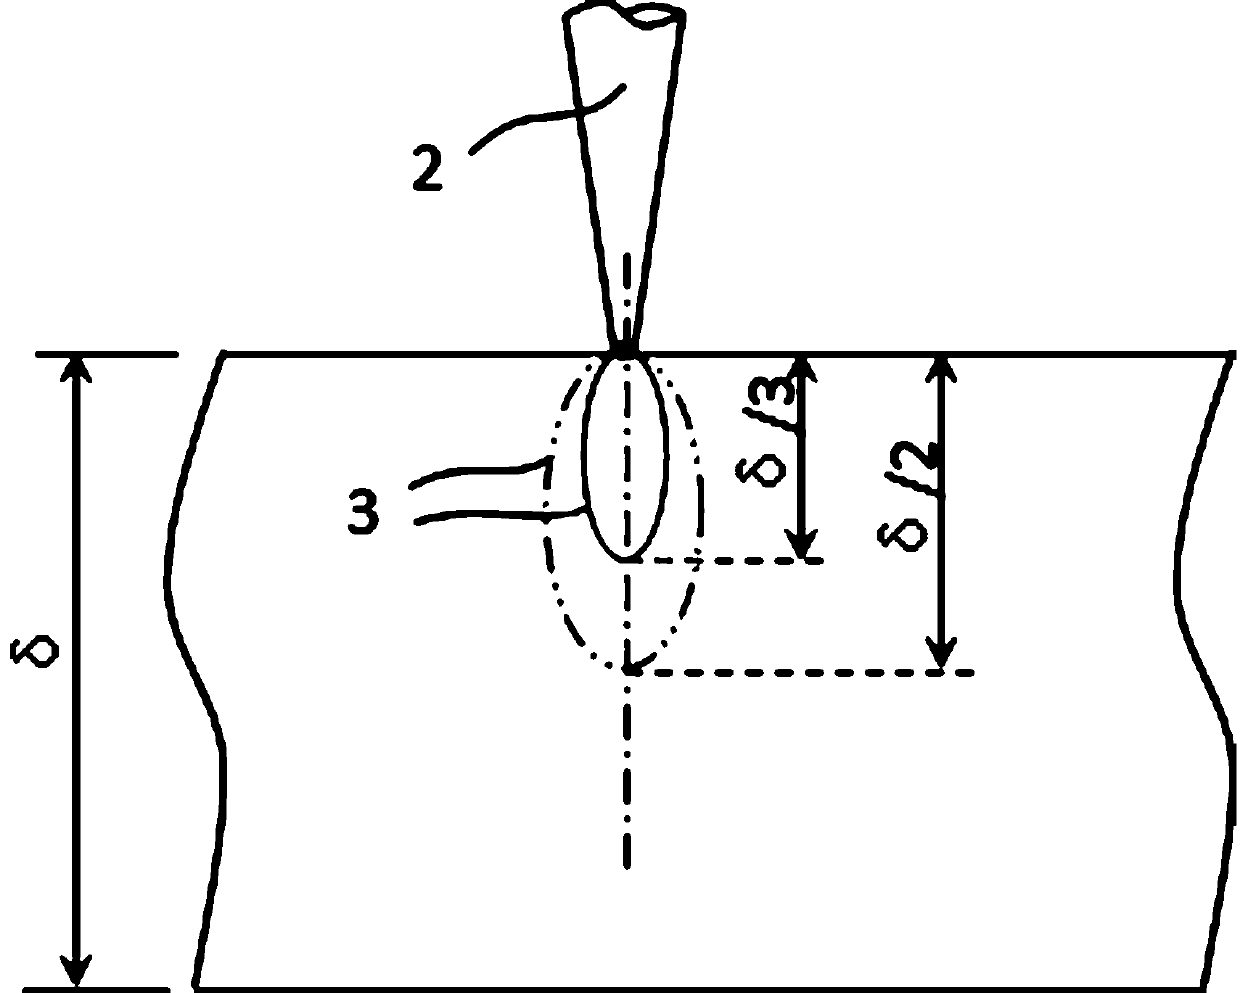 A scanning laser-tig arc compound deep penetration welding method